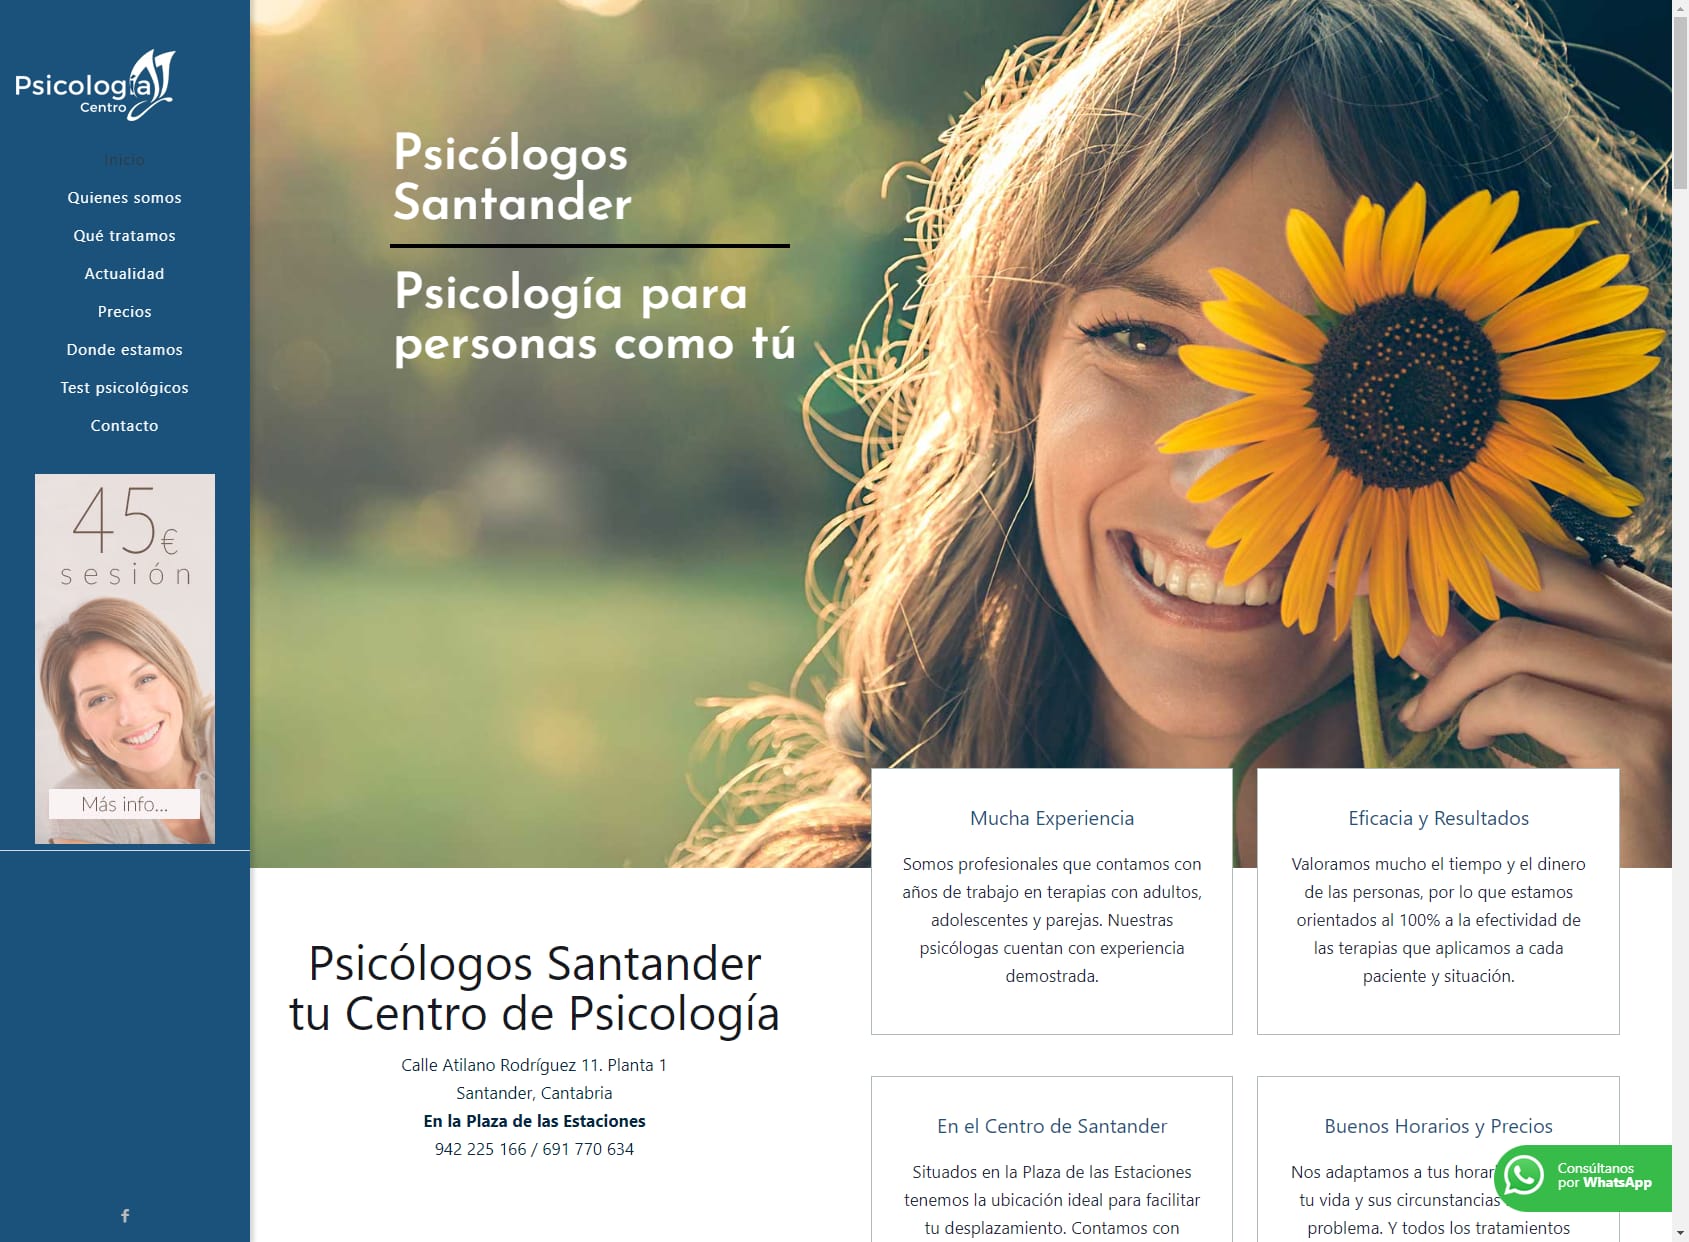 PSICÓLOGOS SANTANDER - 45€ - Centro de Psicología